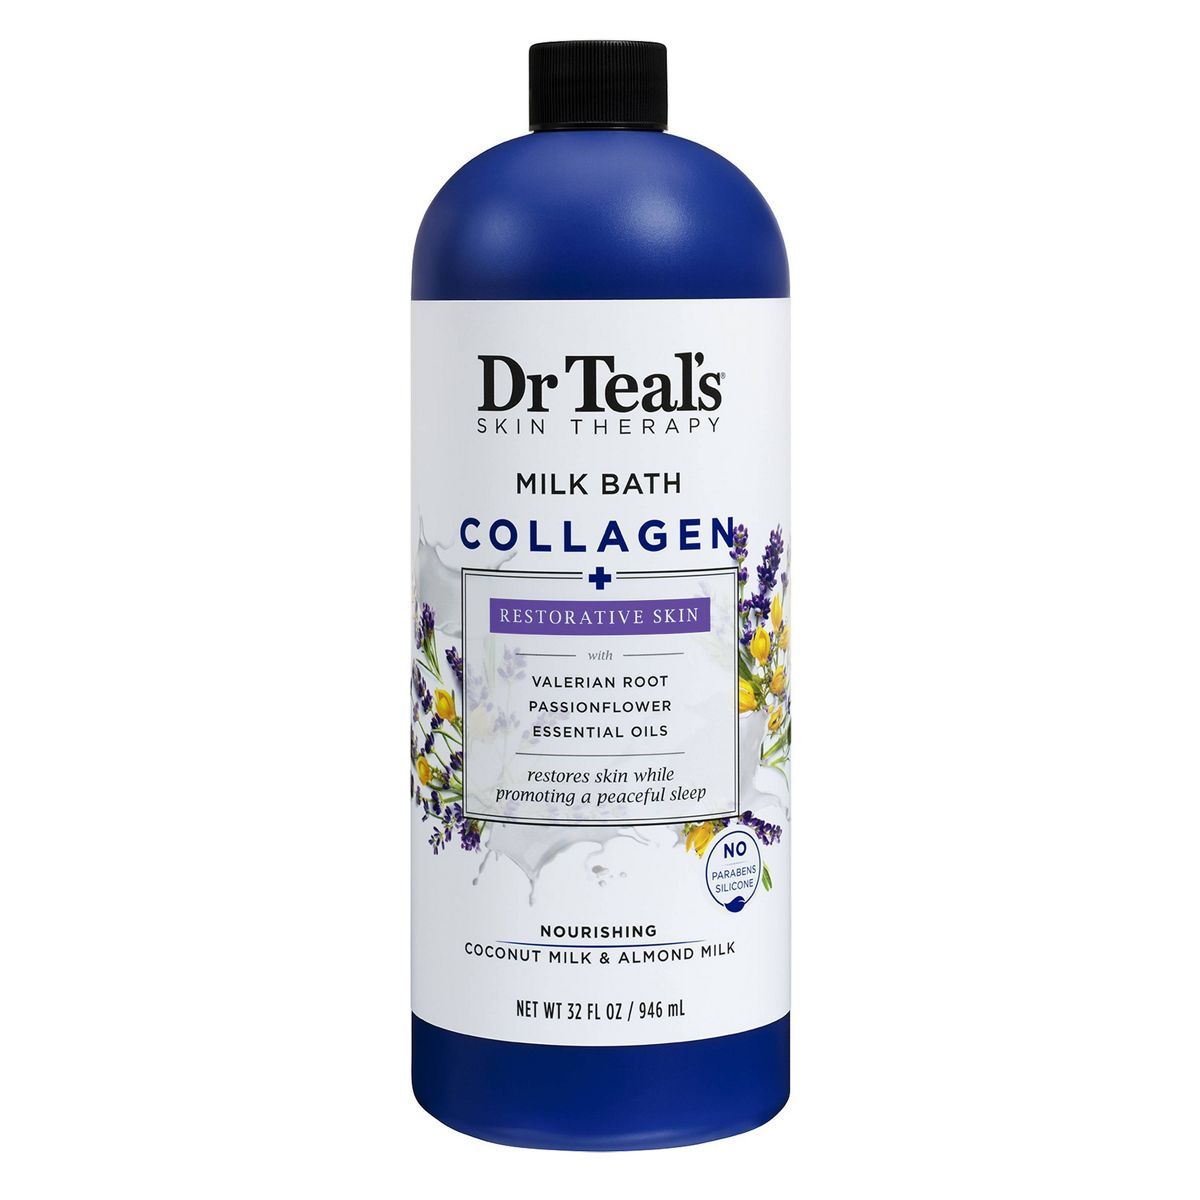 Dr Teal's Collagen Restorative Skin Lavender Milk Bath - 32 fl oz | Target